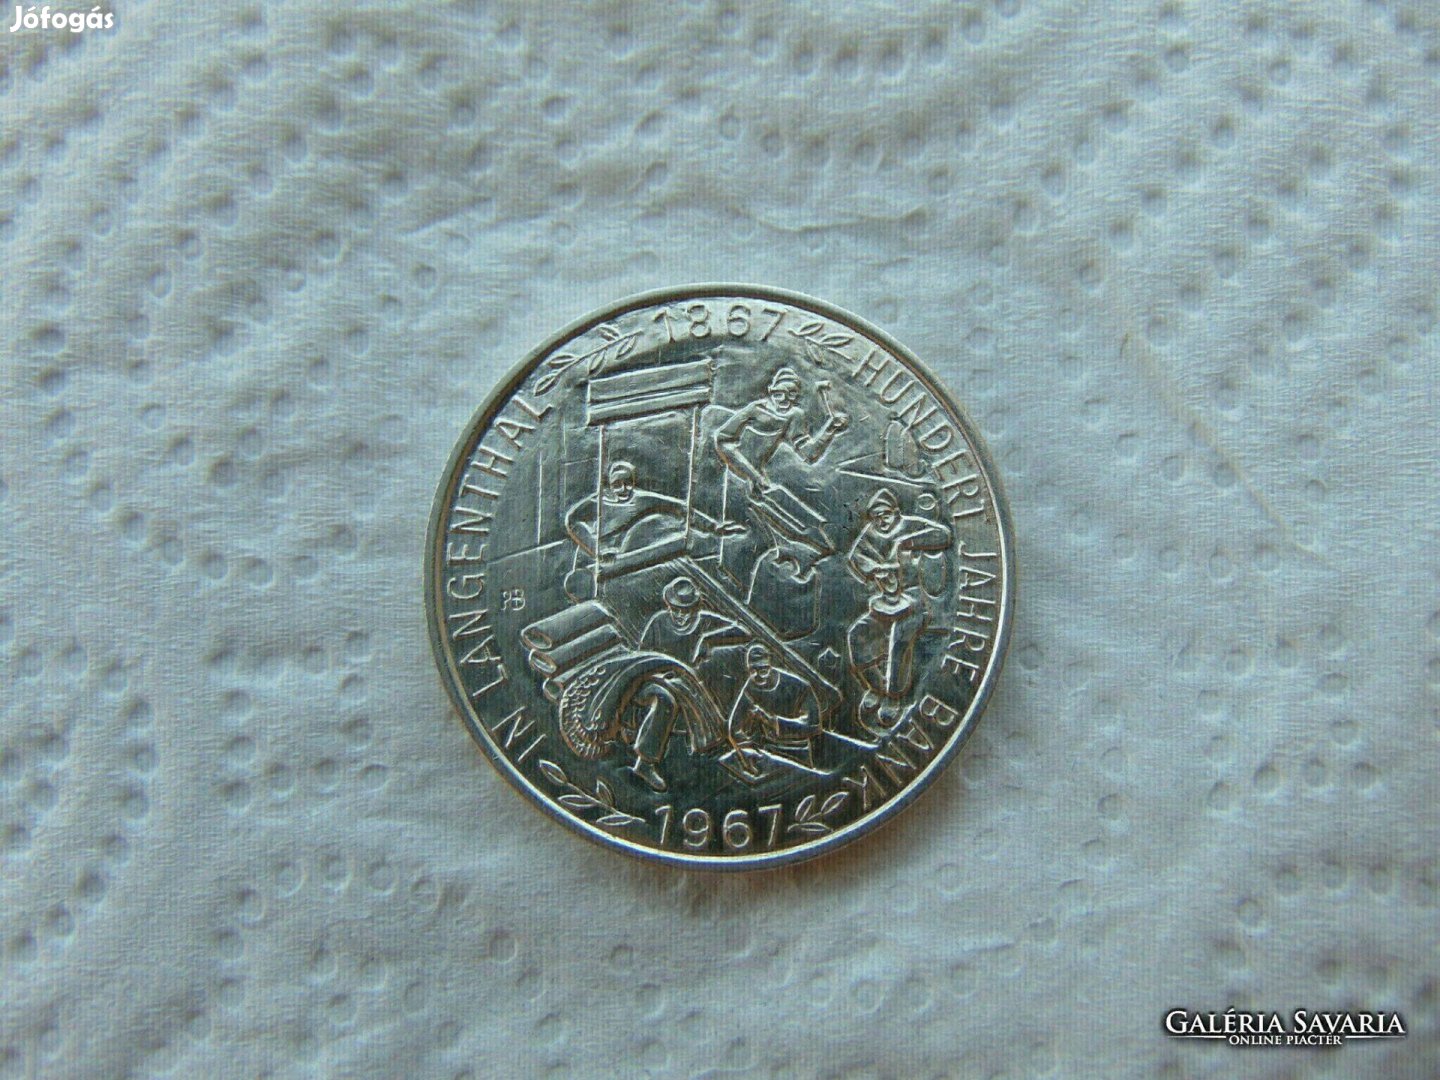 Német ezüst emlékérem 1967 15. 03 gramm 900 -as ezüst